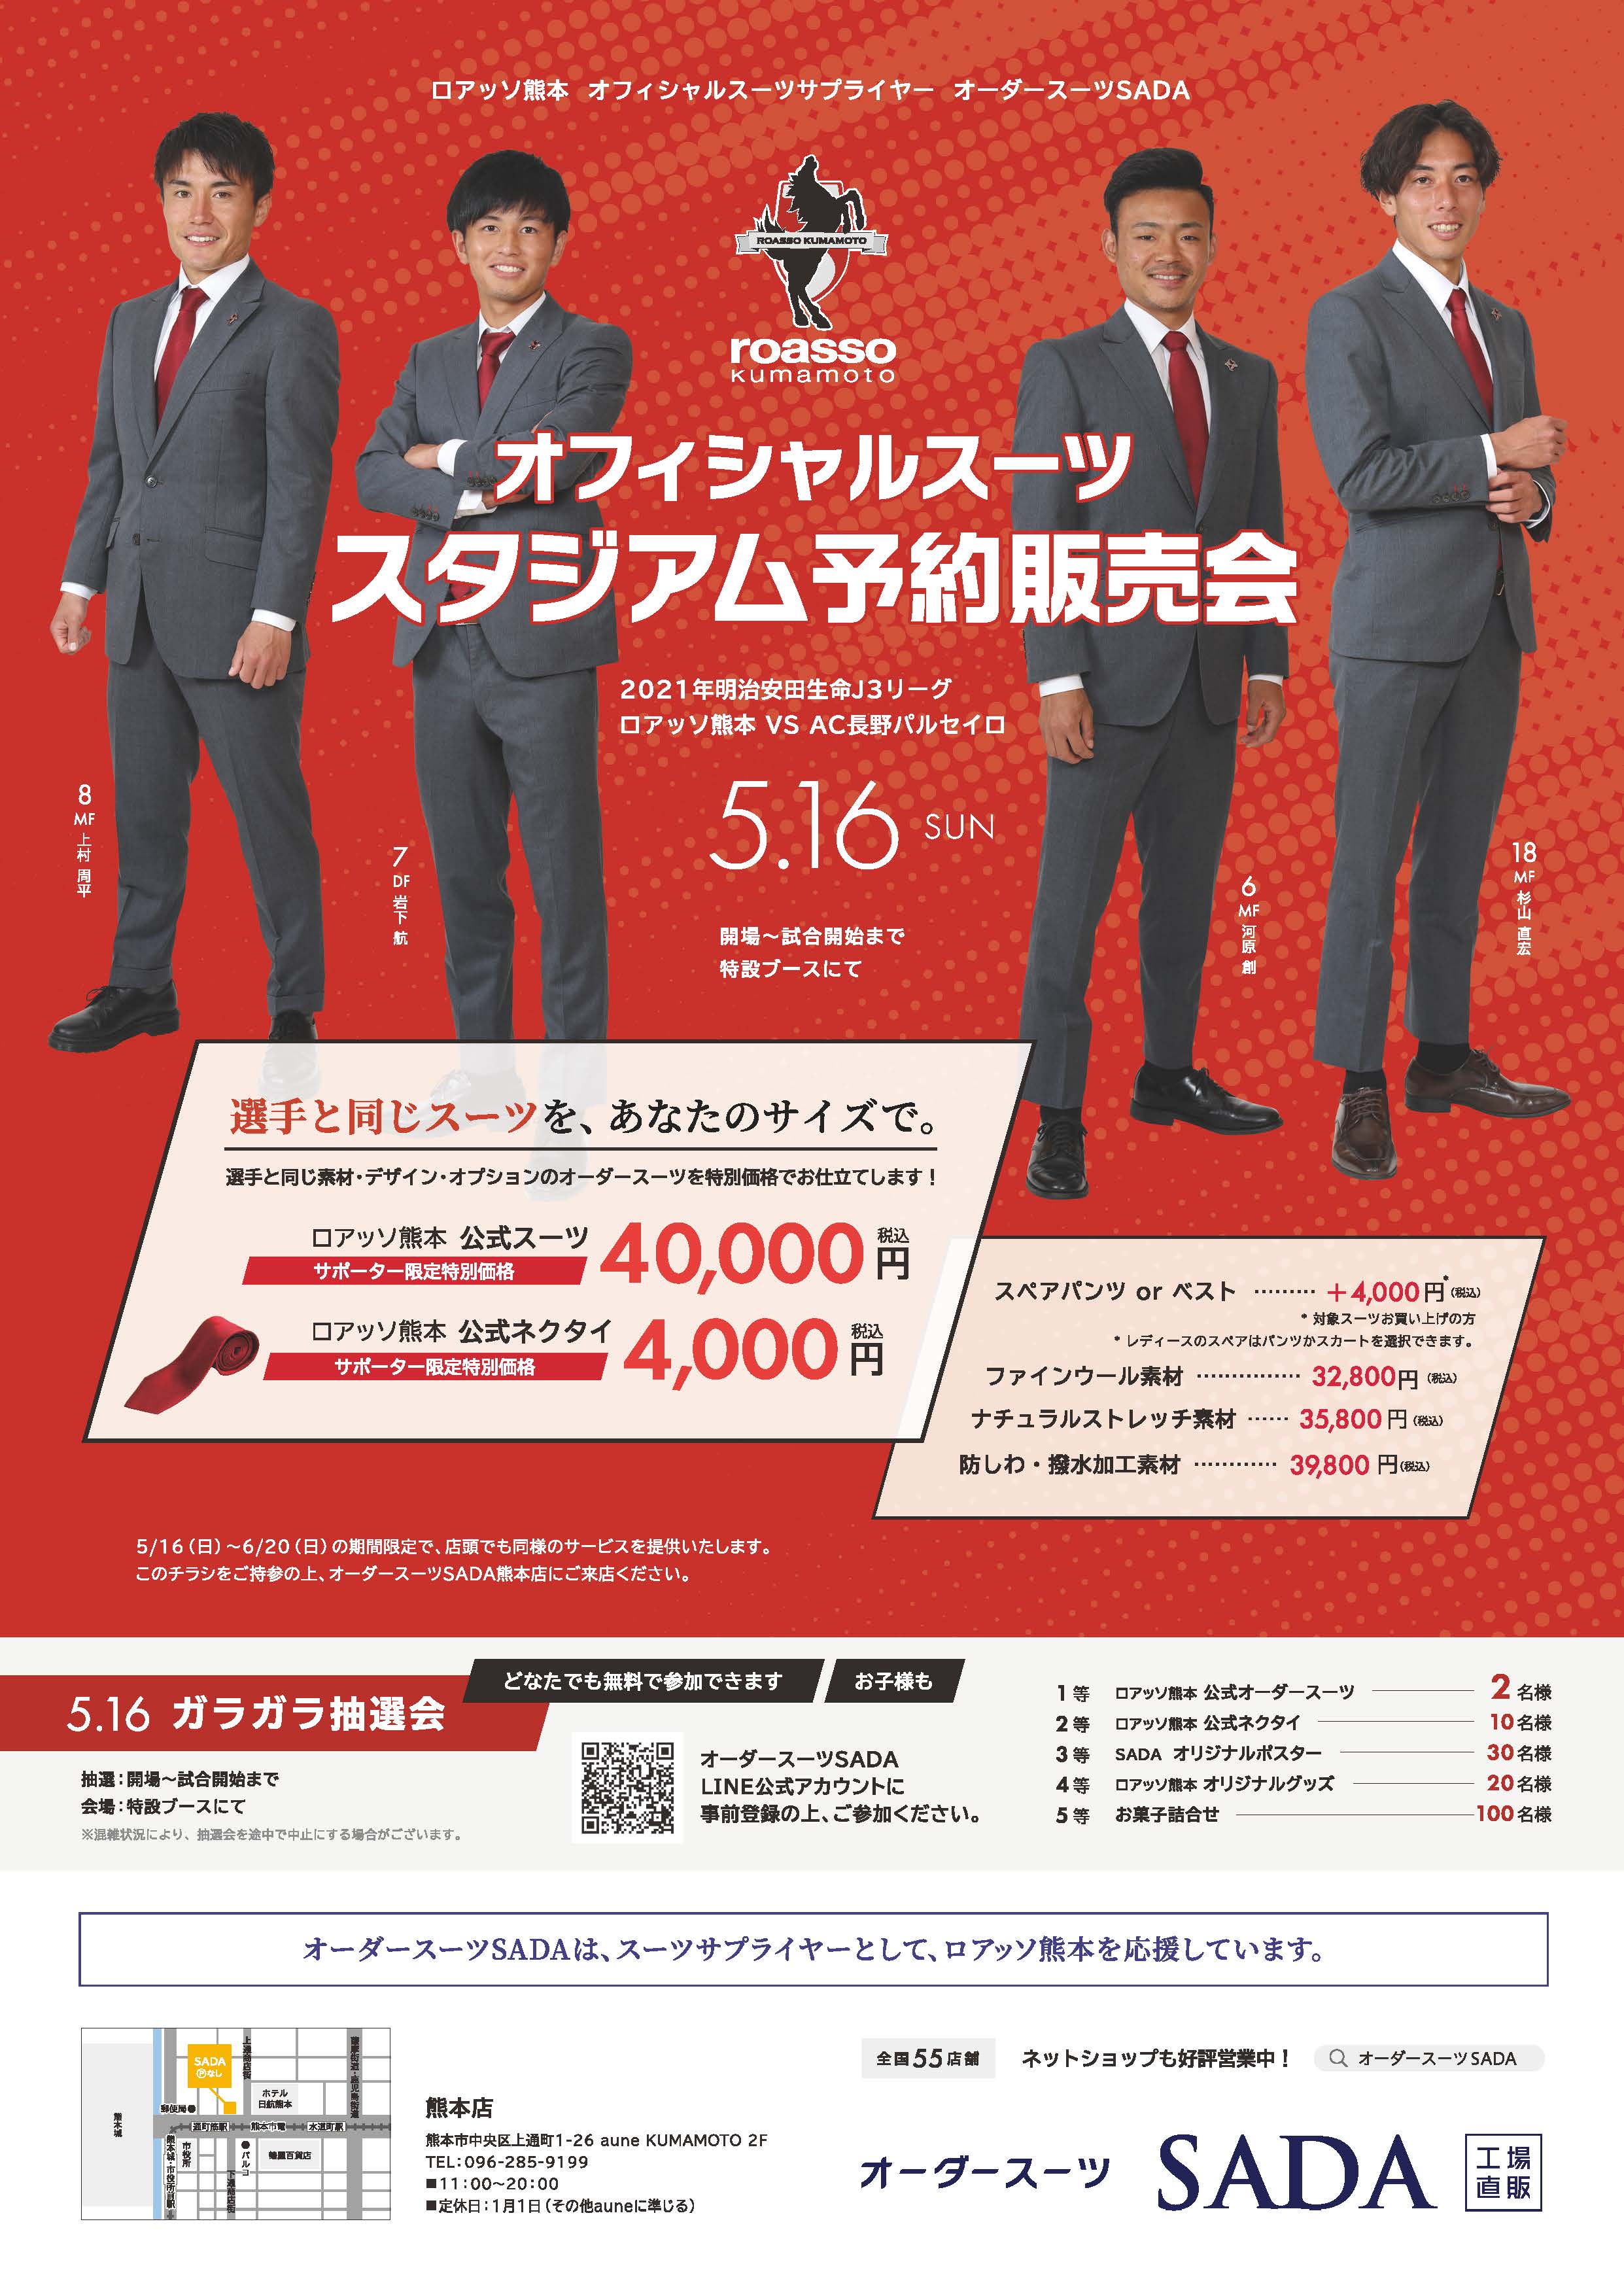 5 16 日 ロアッソ熊本 オフィシャルスーツのスタジアム予約販売会 抽選会をおこないます 株式会社オーダースーツsadaのプレスリリース